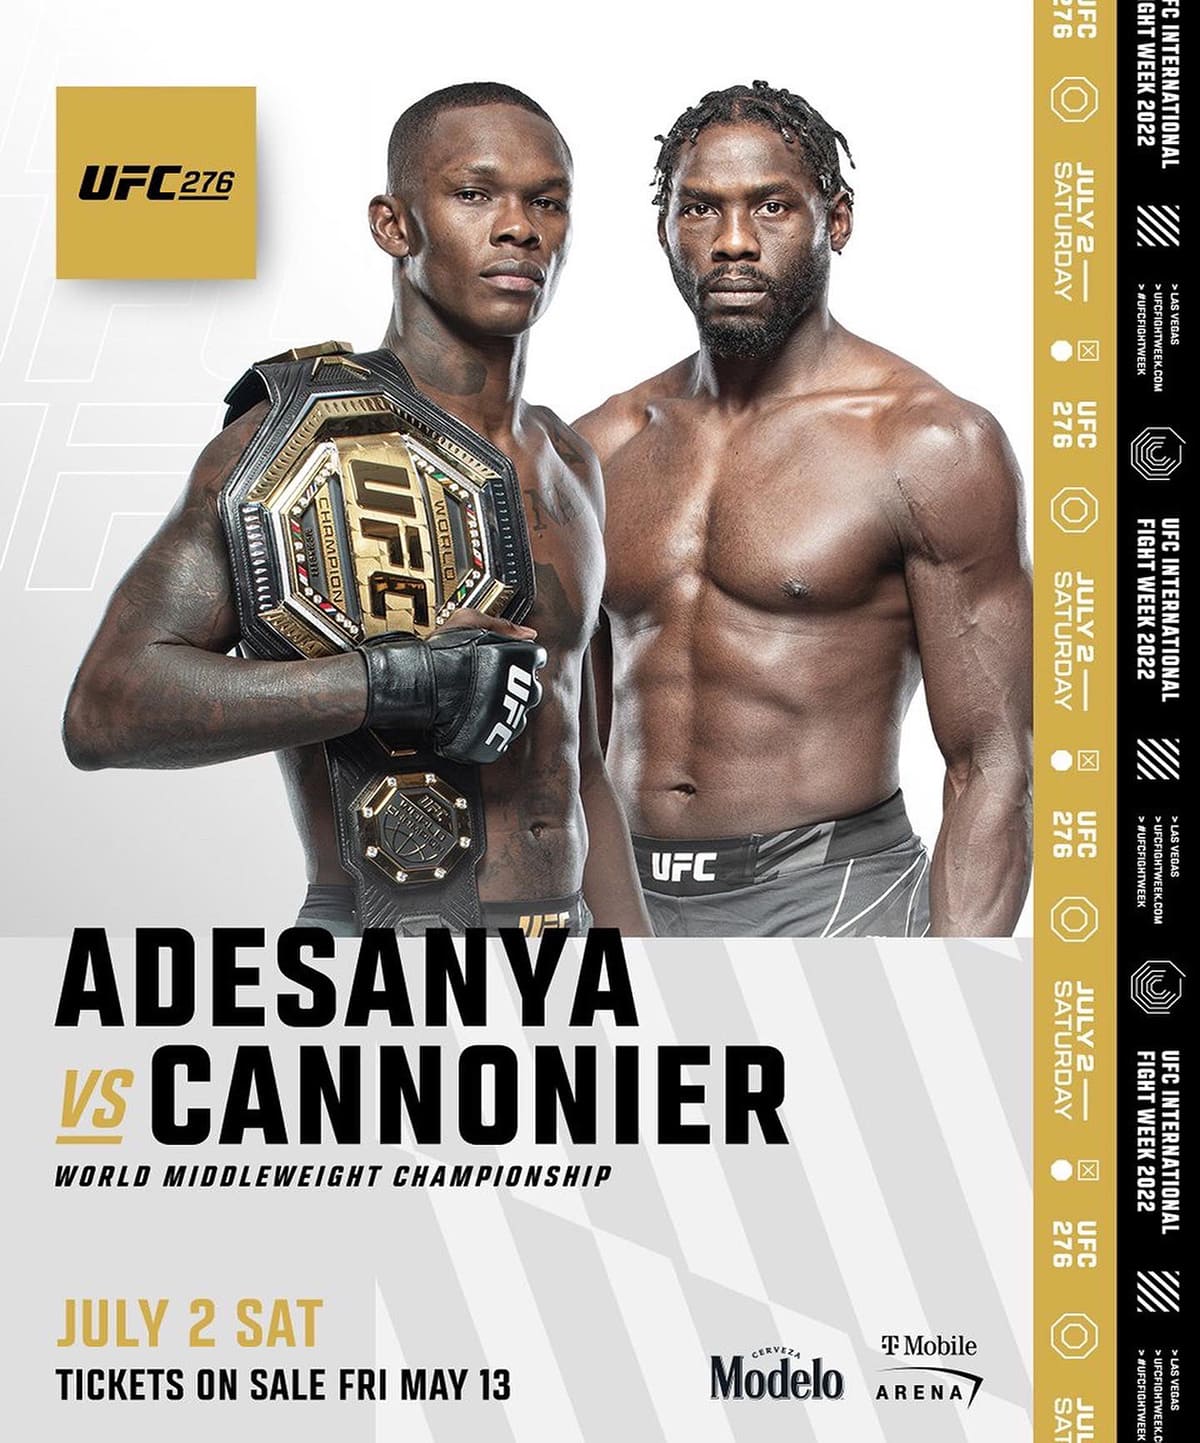 UFC 276: Адесанья - Каннонир дата проведения, кард, участники и результаты